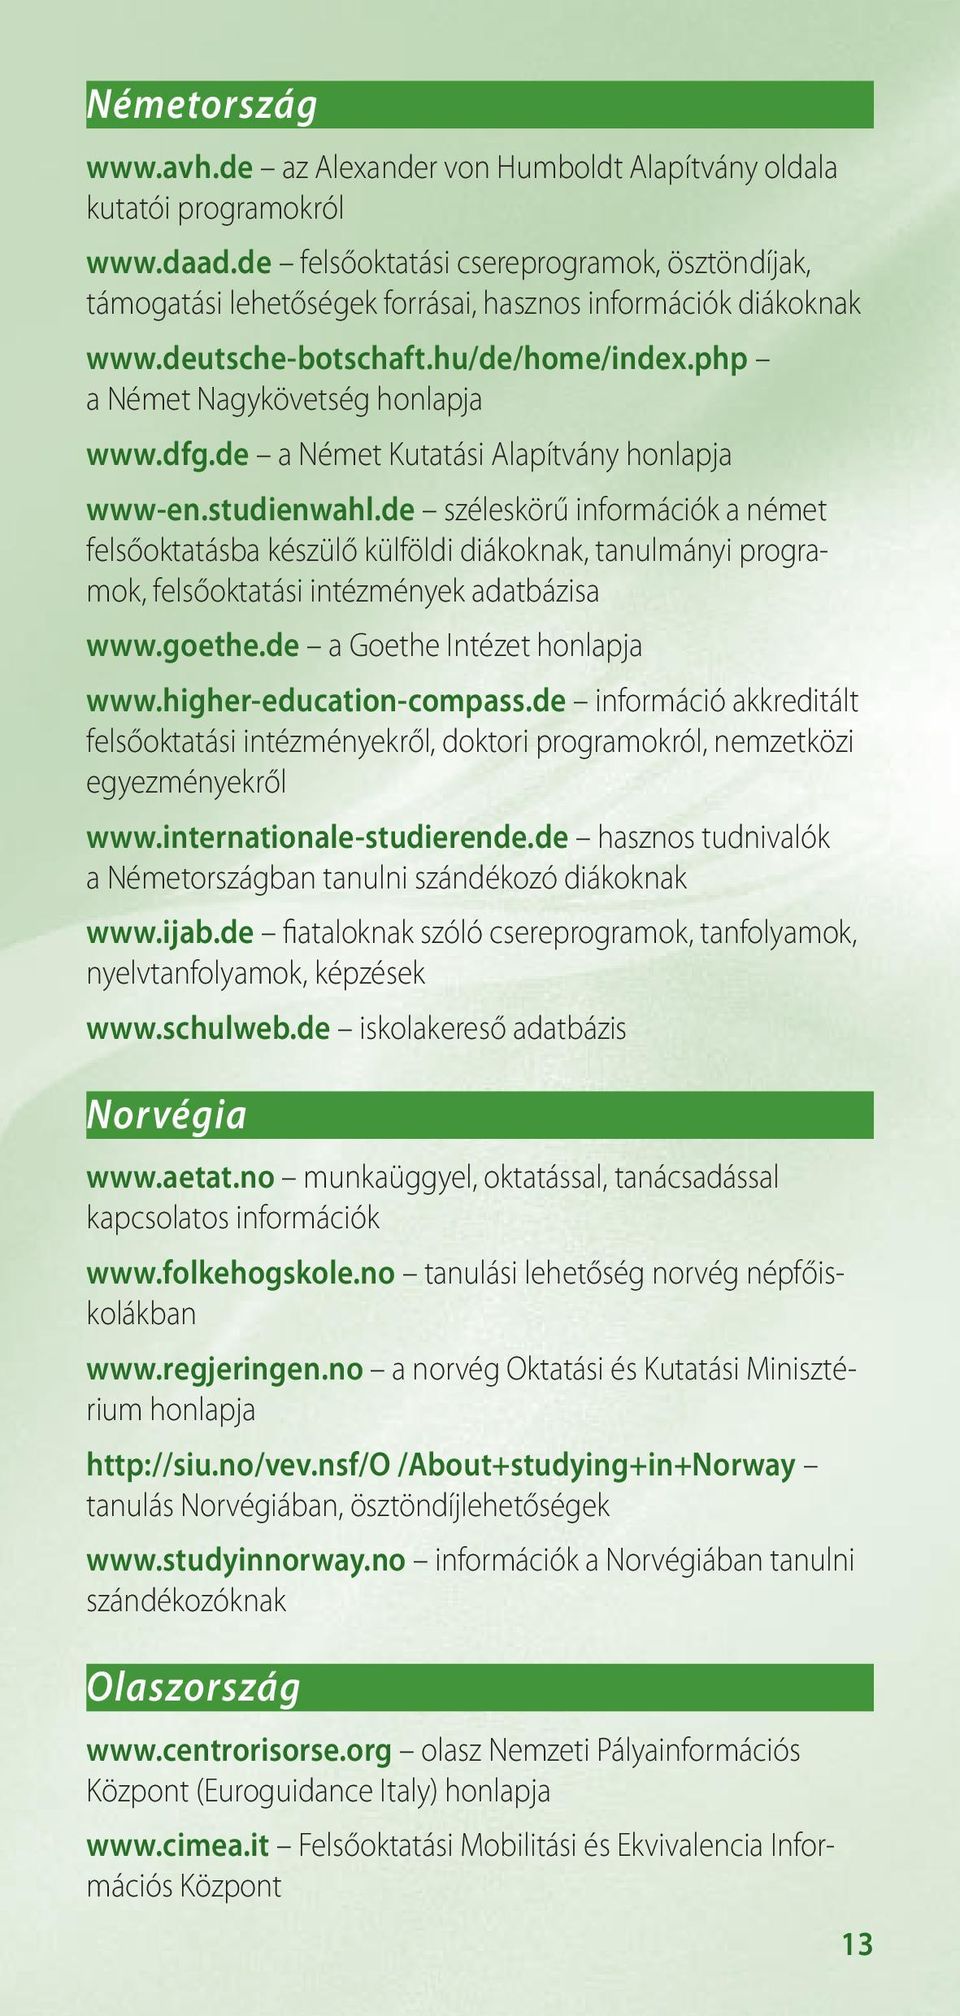 de a Német Kutatási Alapítvány www-en.studienwahl.de széleskörű információk a német felsőoktatásba készülő külföldi diákoknak, tanulmányi programok, felsőoktatási intézmények adatbázisa www.goethe.